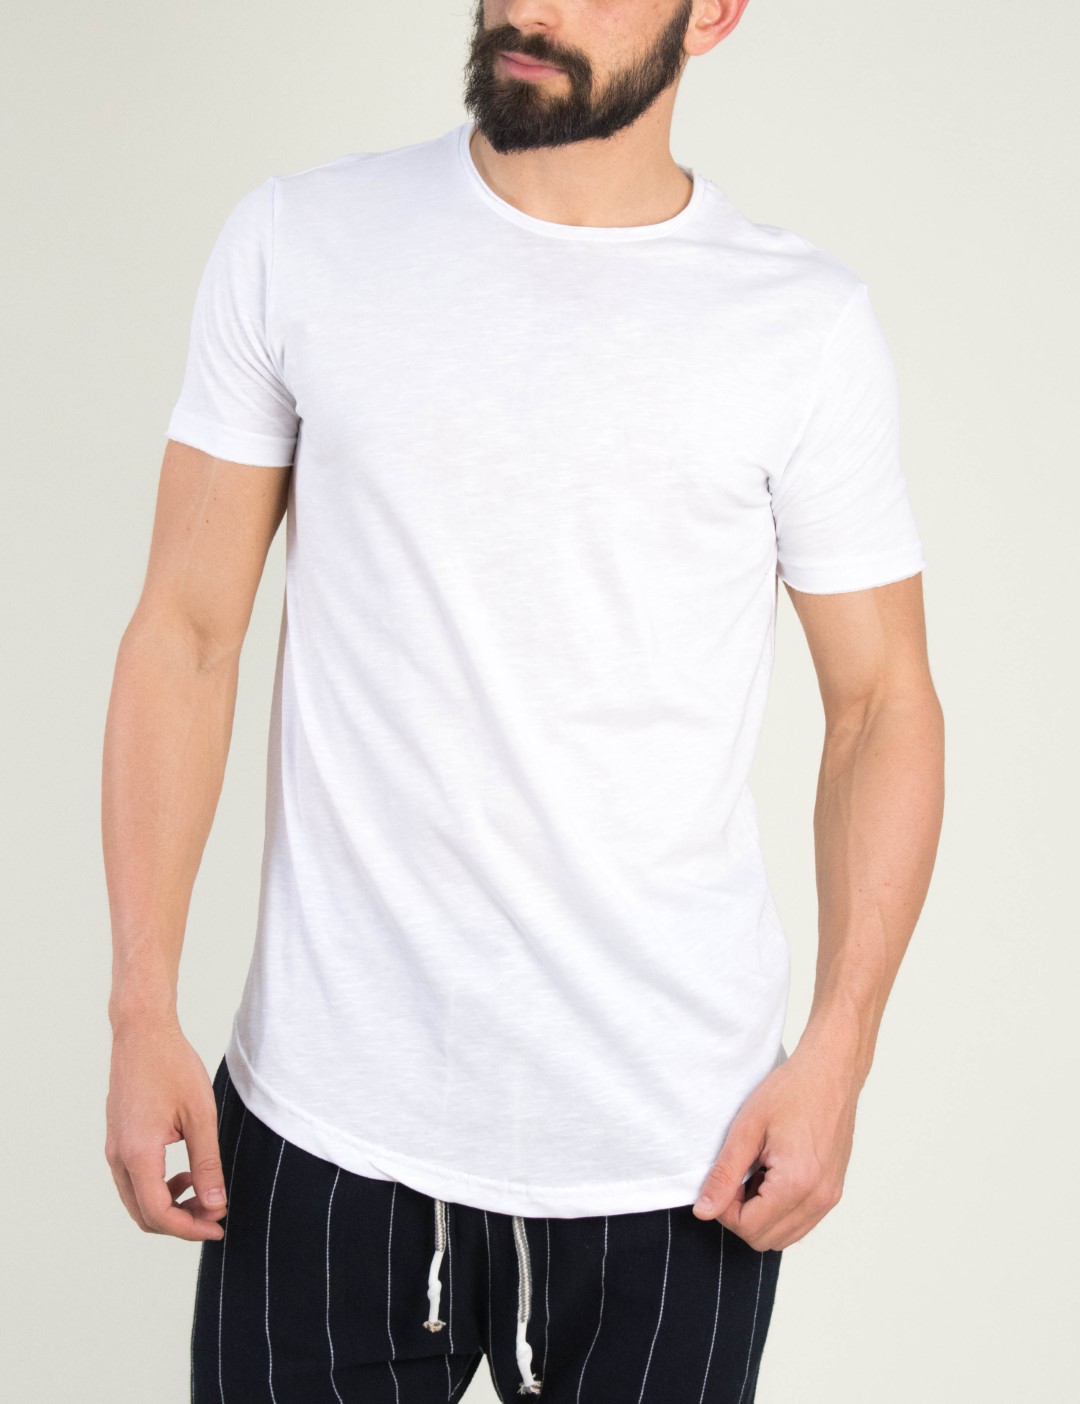 ΑΝΔΡΑΣ > ΑΝΔΡΙΚΑ ΡΟΥΧΑ > ΜΠΛΟΥΖΕΣ > T-Shirt Ανδρικό λευκό t-shirt Brothers μονόχρωμο 19002F